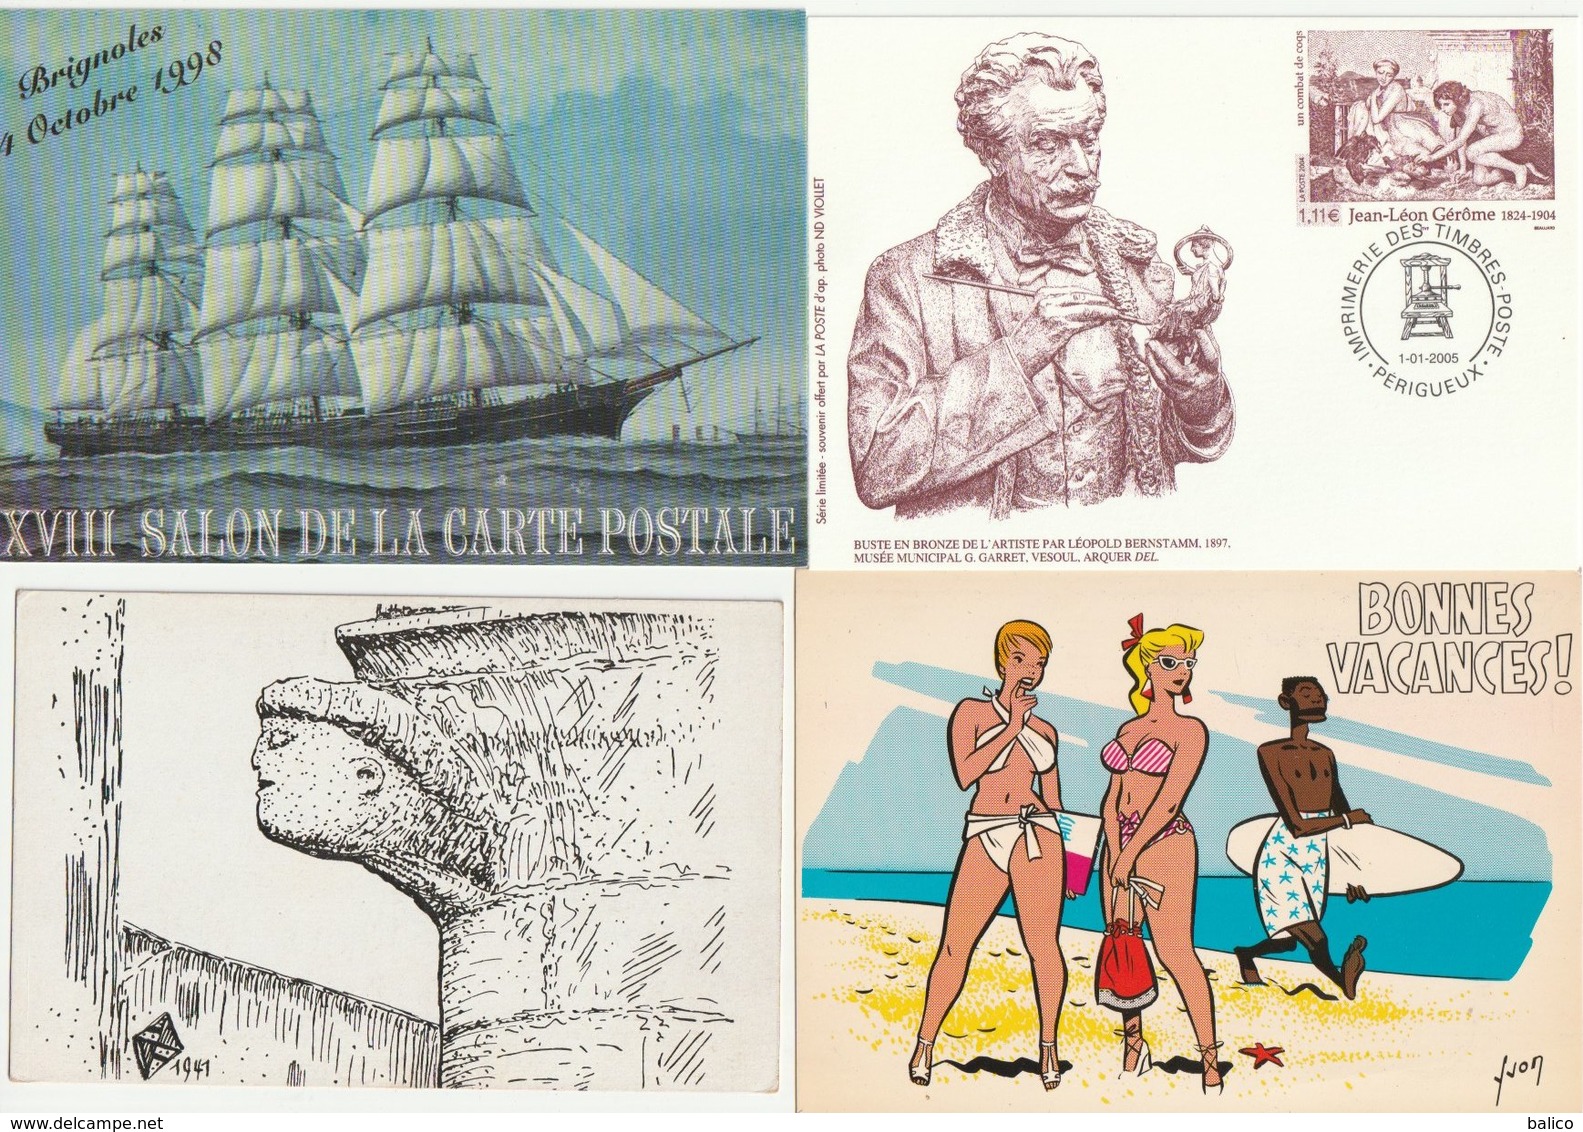 Lot de 52 cartes postales Semi-Modernes et Anciennes,  diverses,    réf, 168